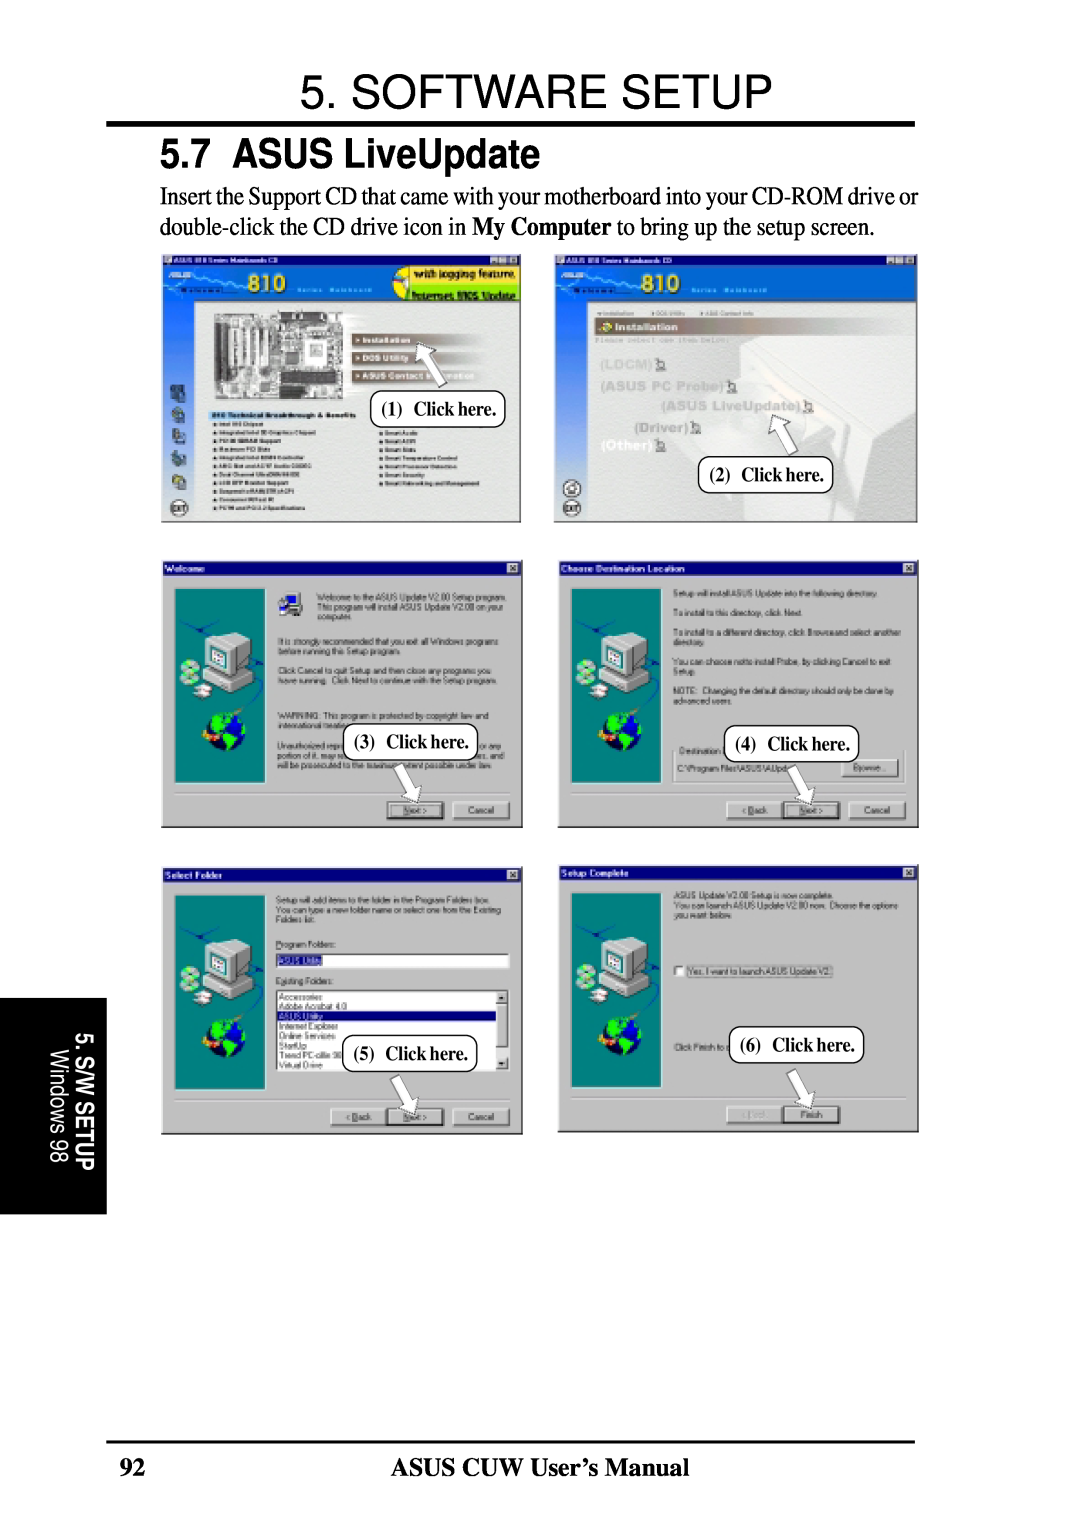 Asus 810 user manual ASUS LiveUpdate, Software Setup, ASUS CUW User’s Manual, Click here, 5. S/W SETUP, Windows 